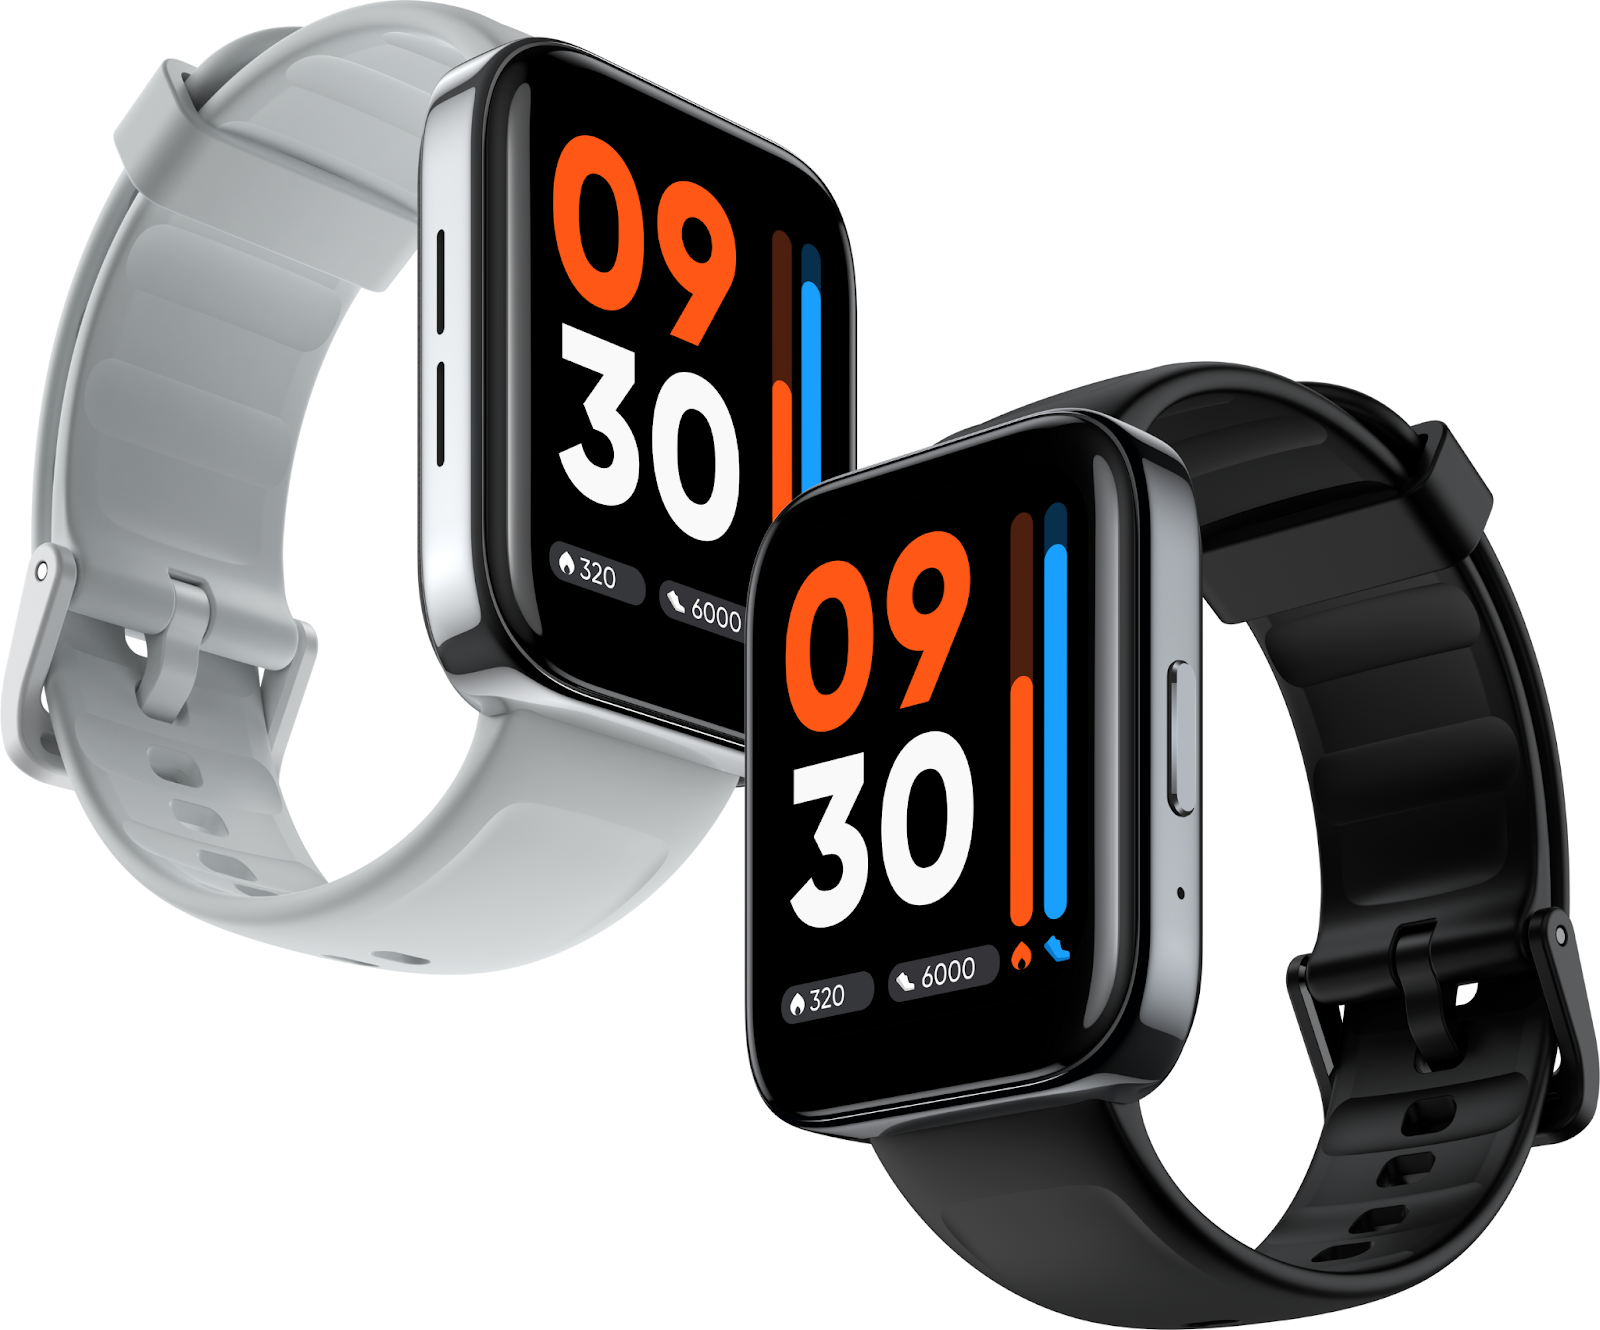 Realme watch 3 có màn hình siêu hiển thị lên đến 1. 8 inch cho hiển thị chi tiết hơn